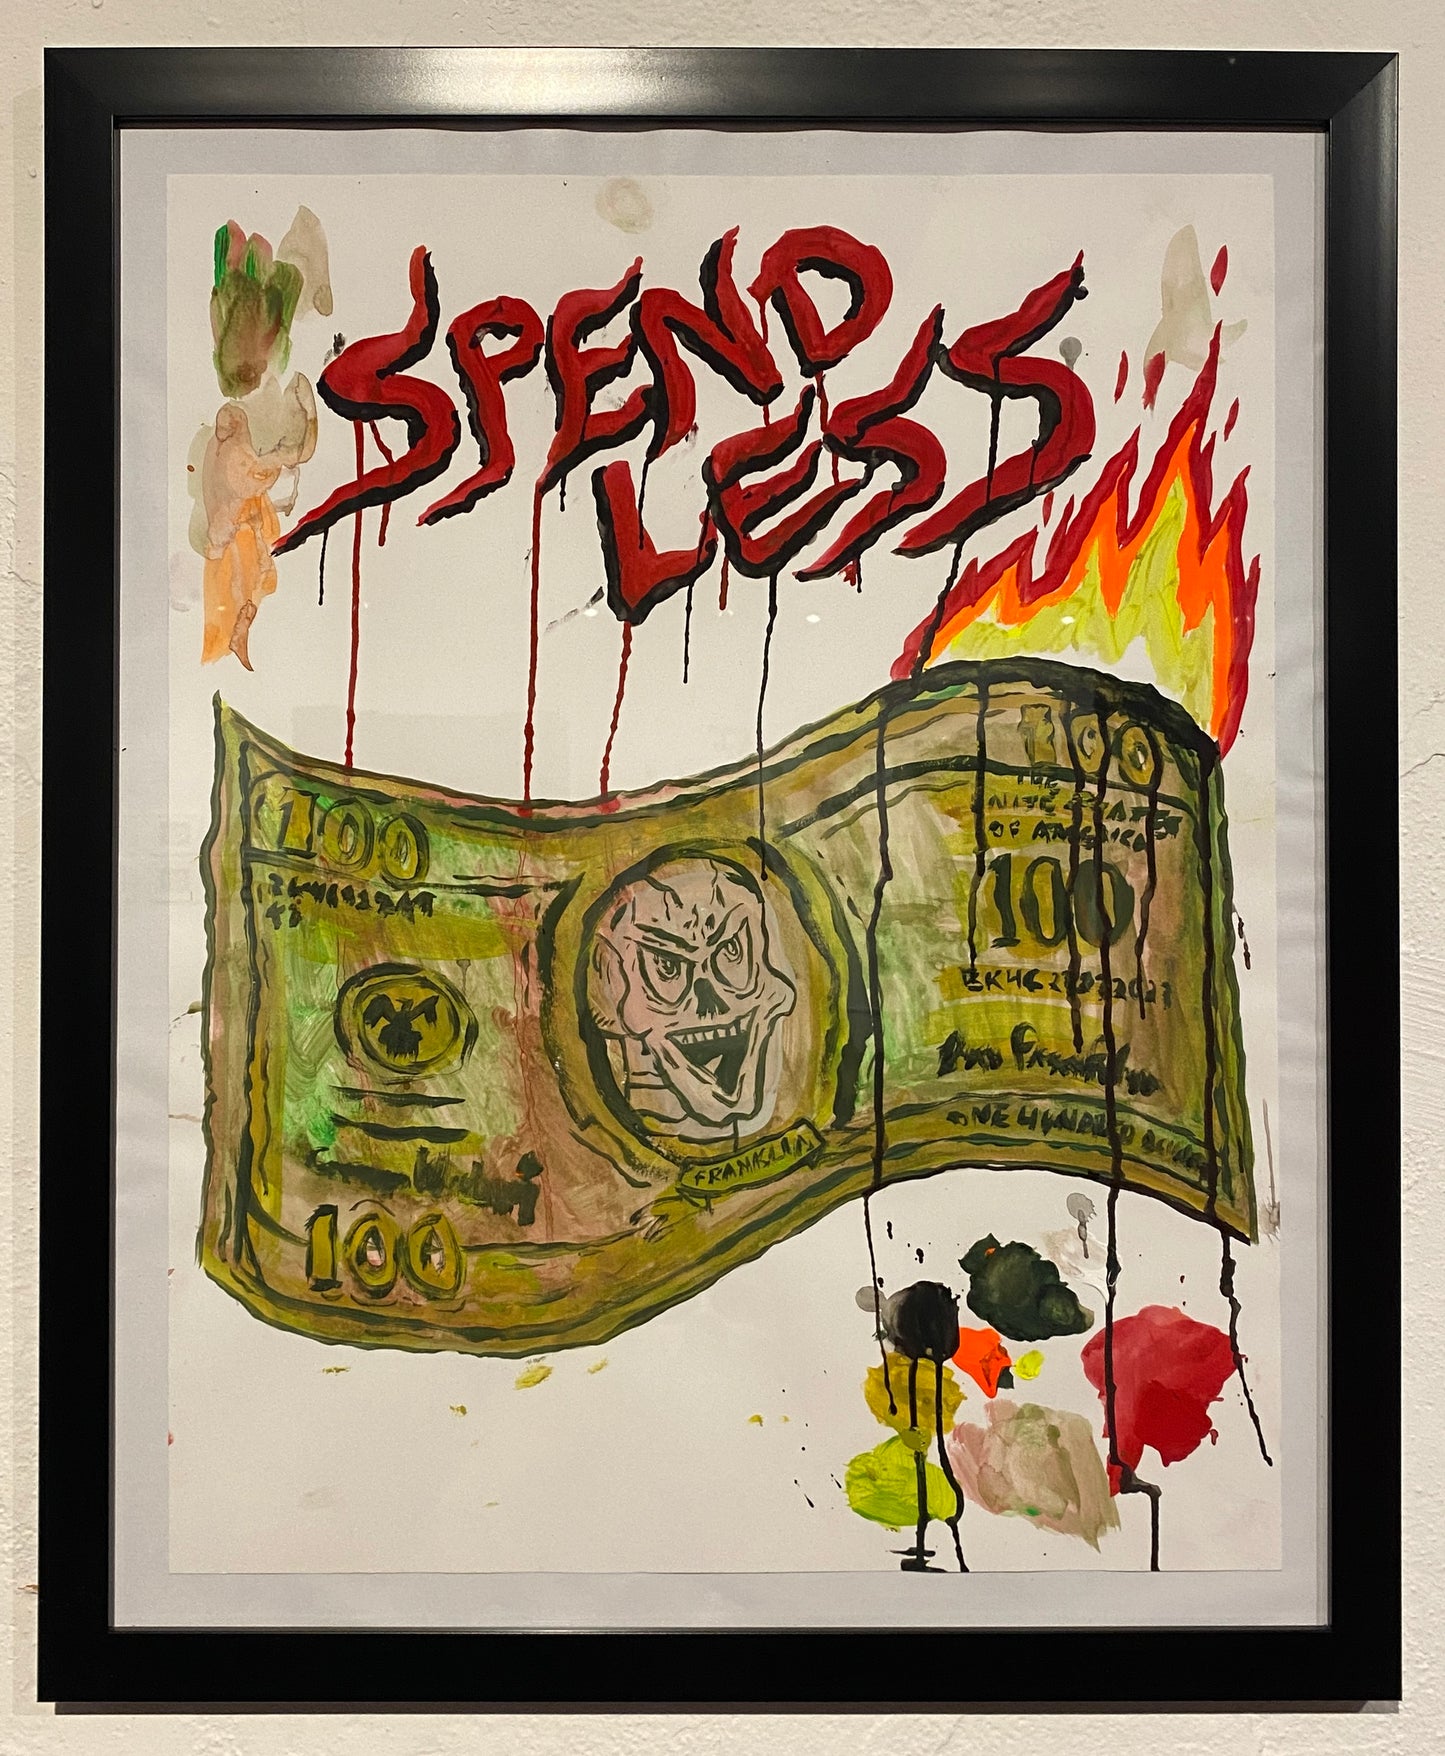 JJ Villard - Spend Less